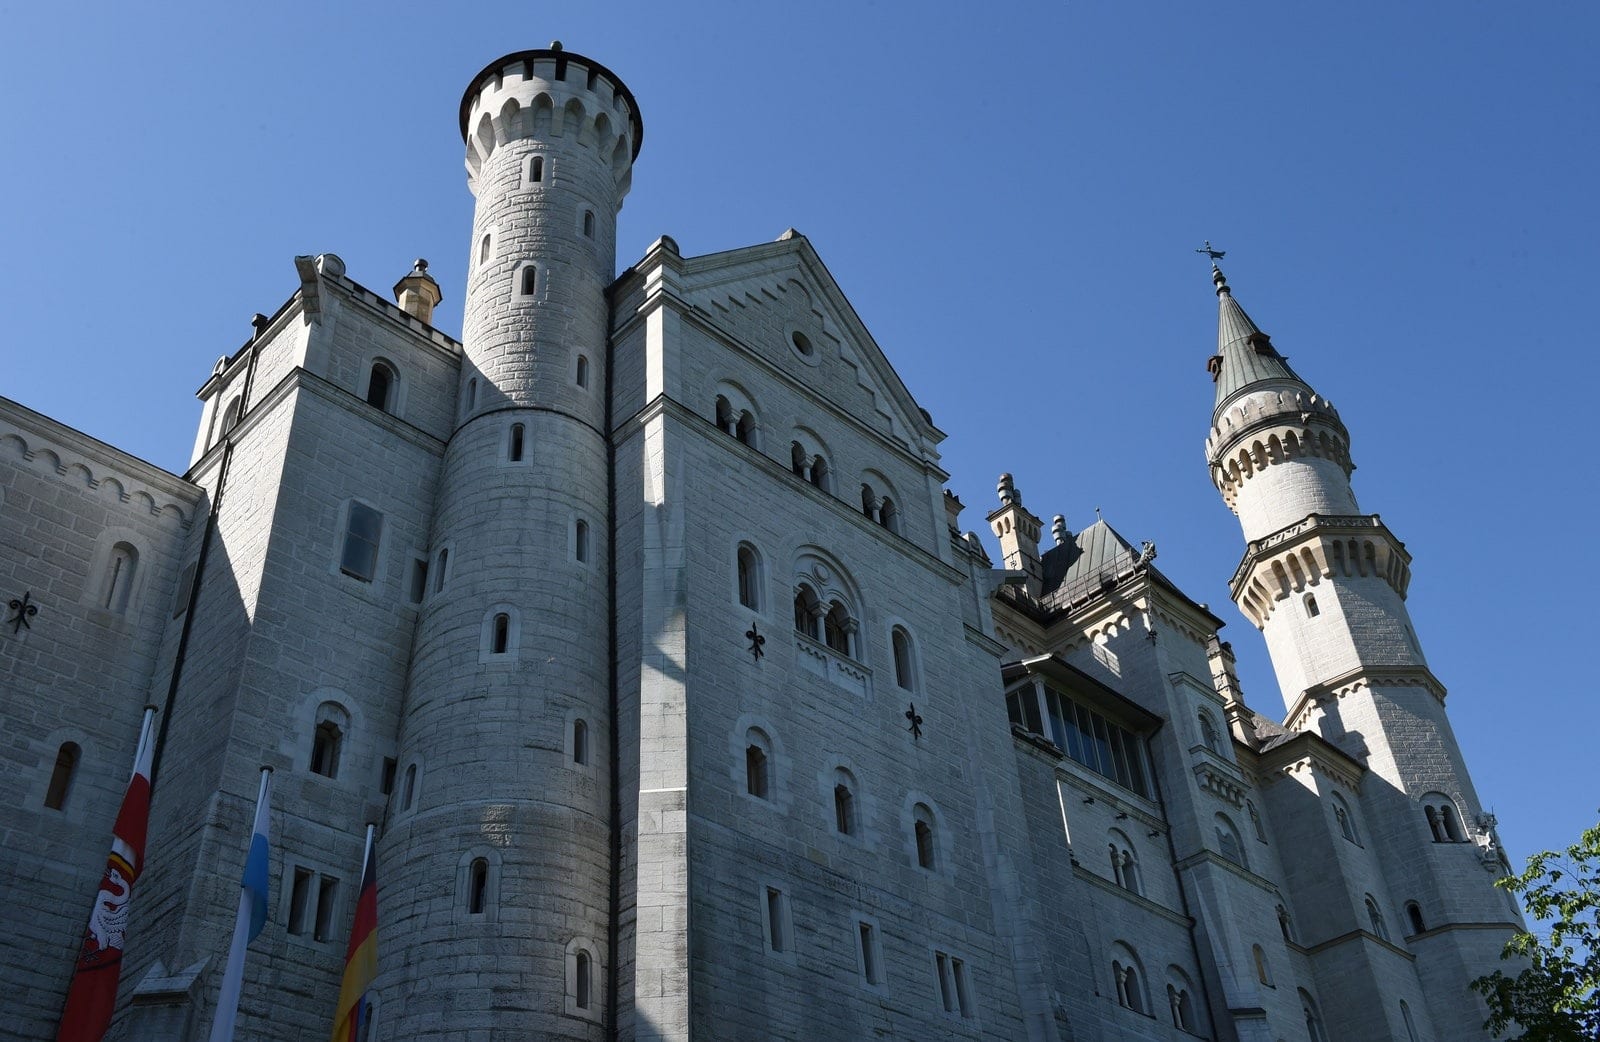 The iconic Neuschwanstein castle